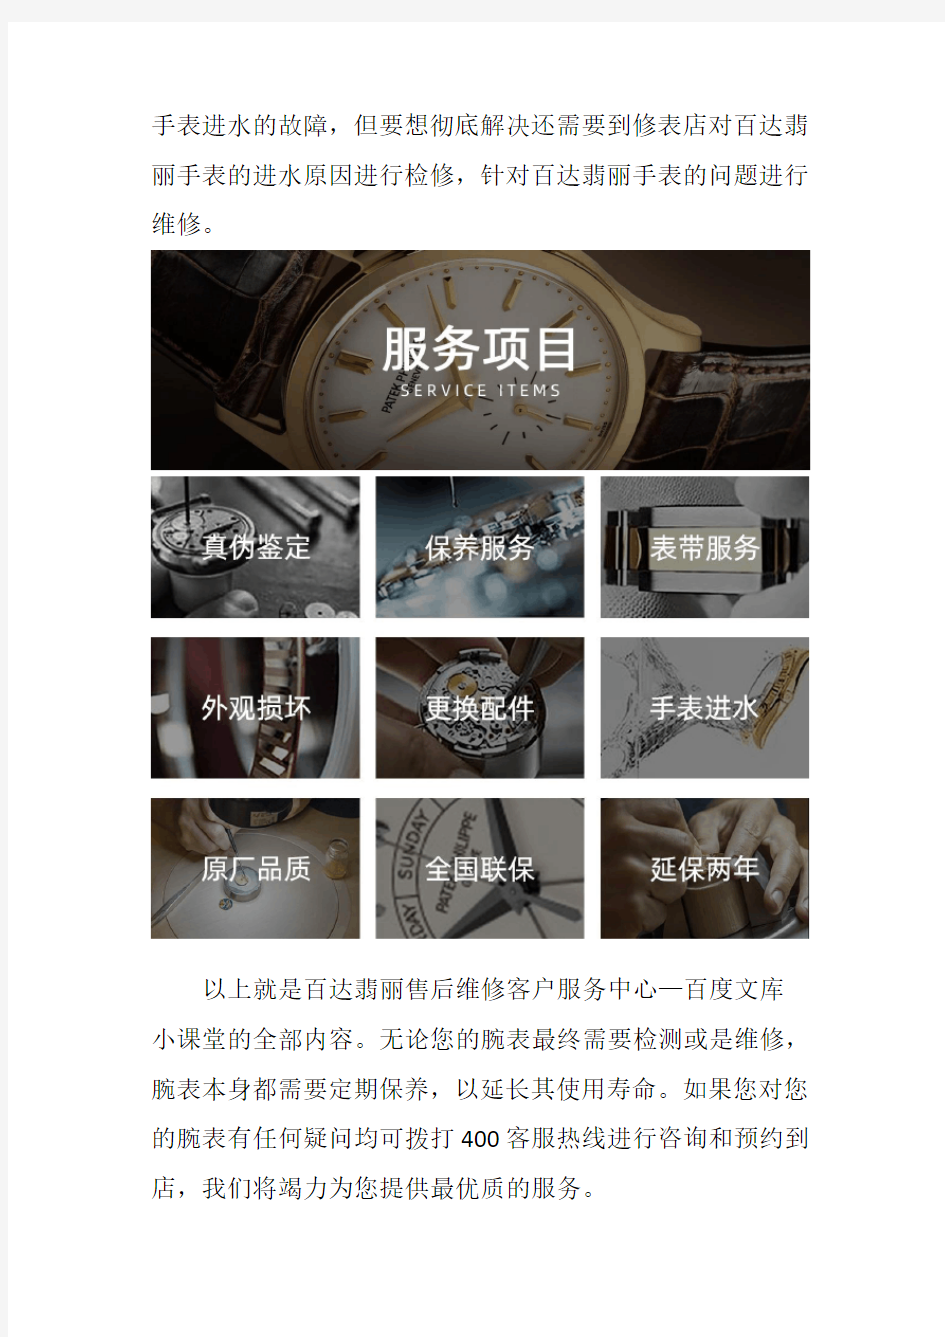 北京百达翡丽手表售后服务网点--手表进水的处理办法